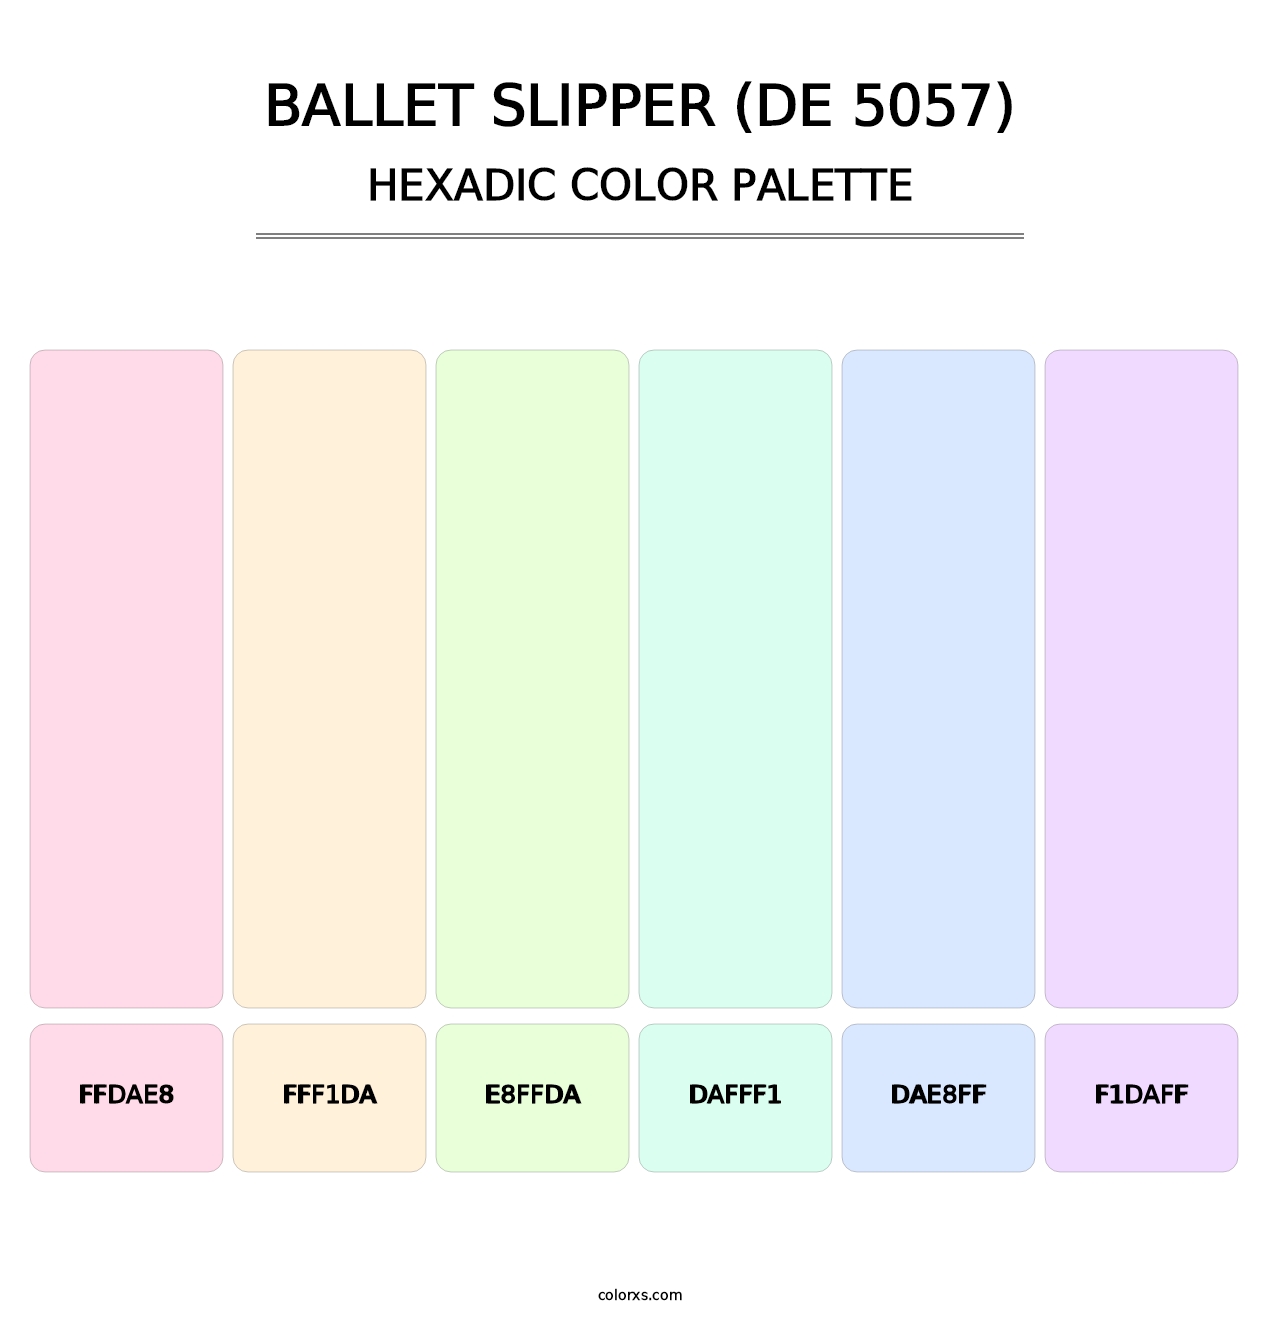 Ballet Slipper (DE 5057) - Hexadic Color Palette